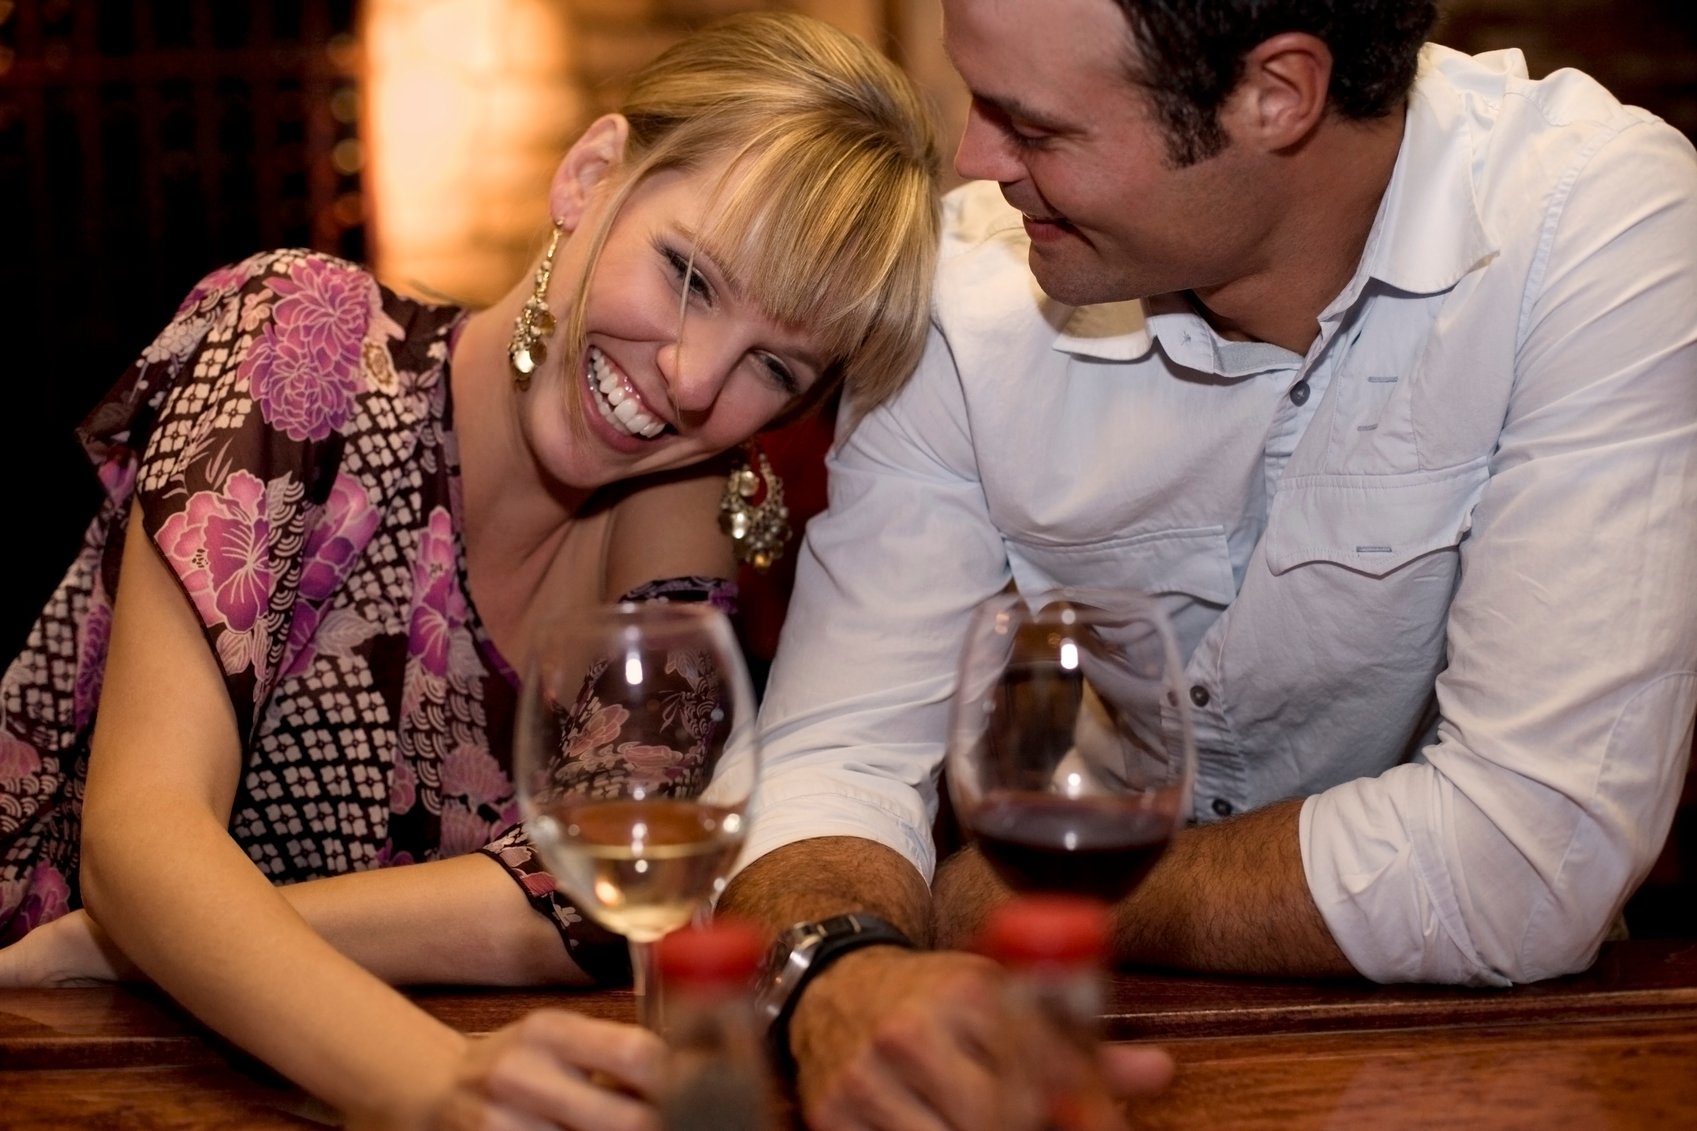 Partnerschaften, in denen beide Partner trinken, haben eine höhere Beziehungsqualität.